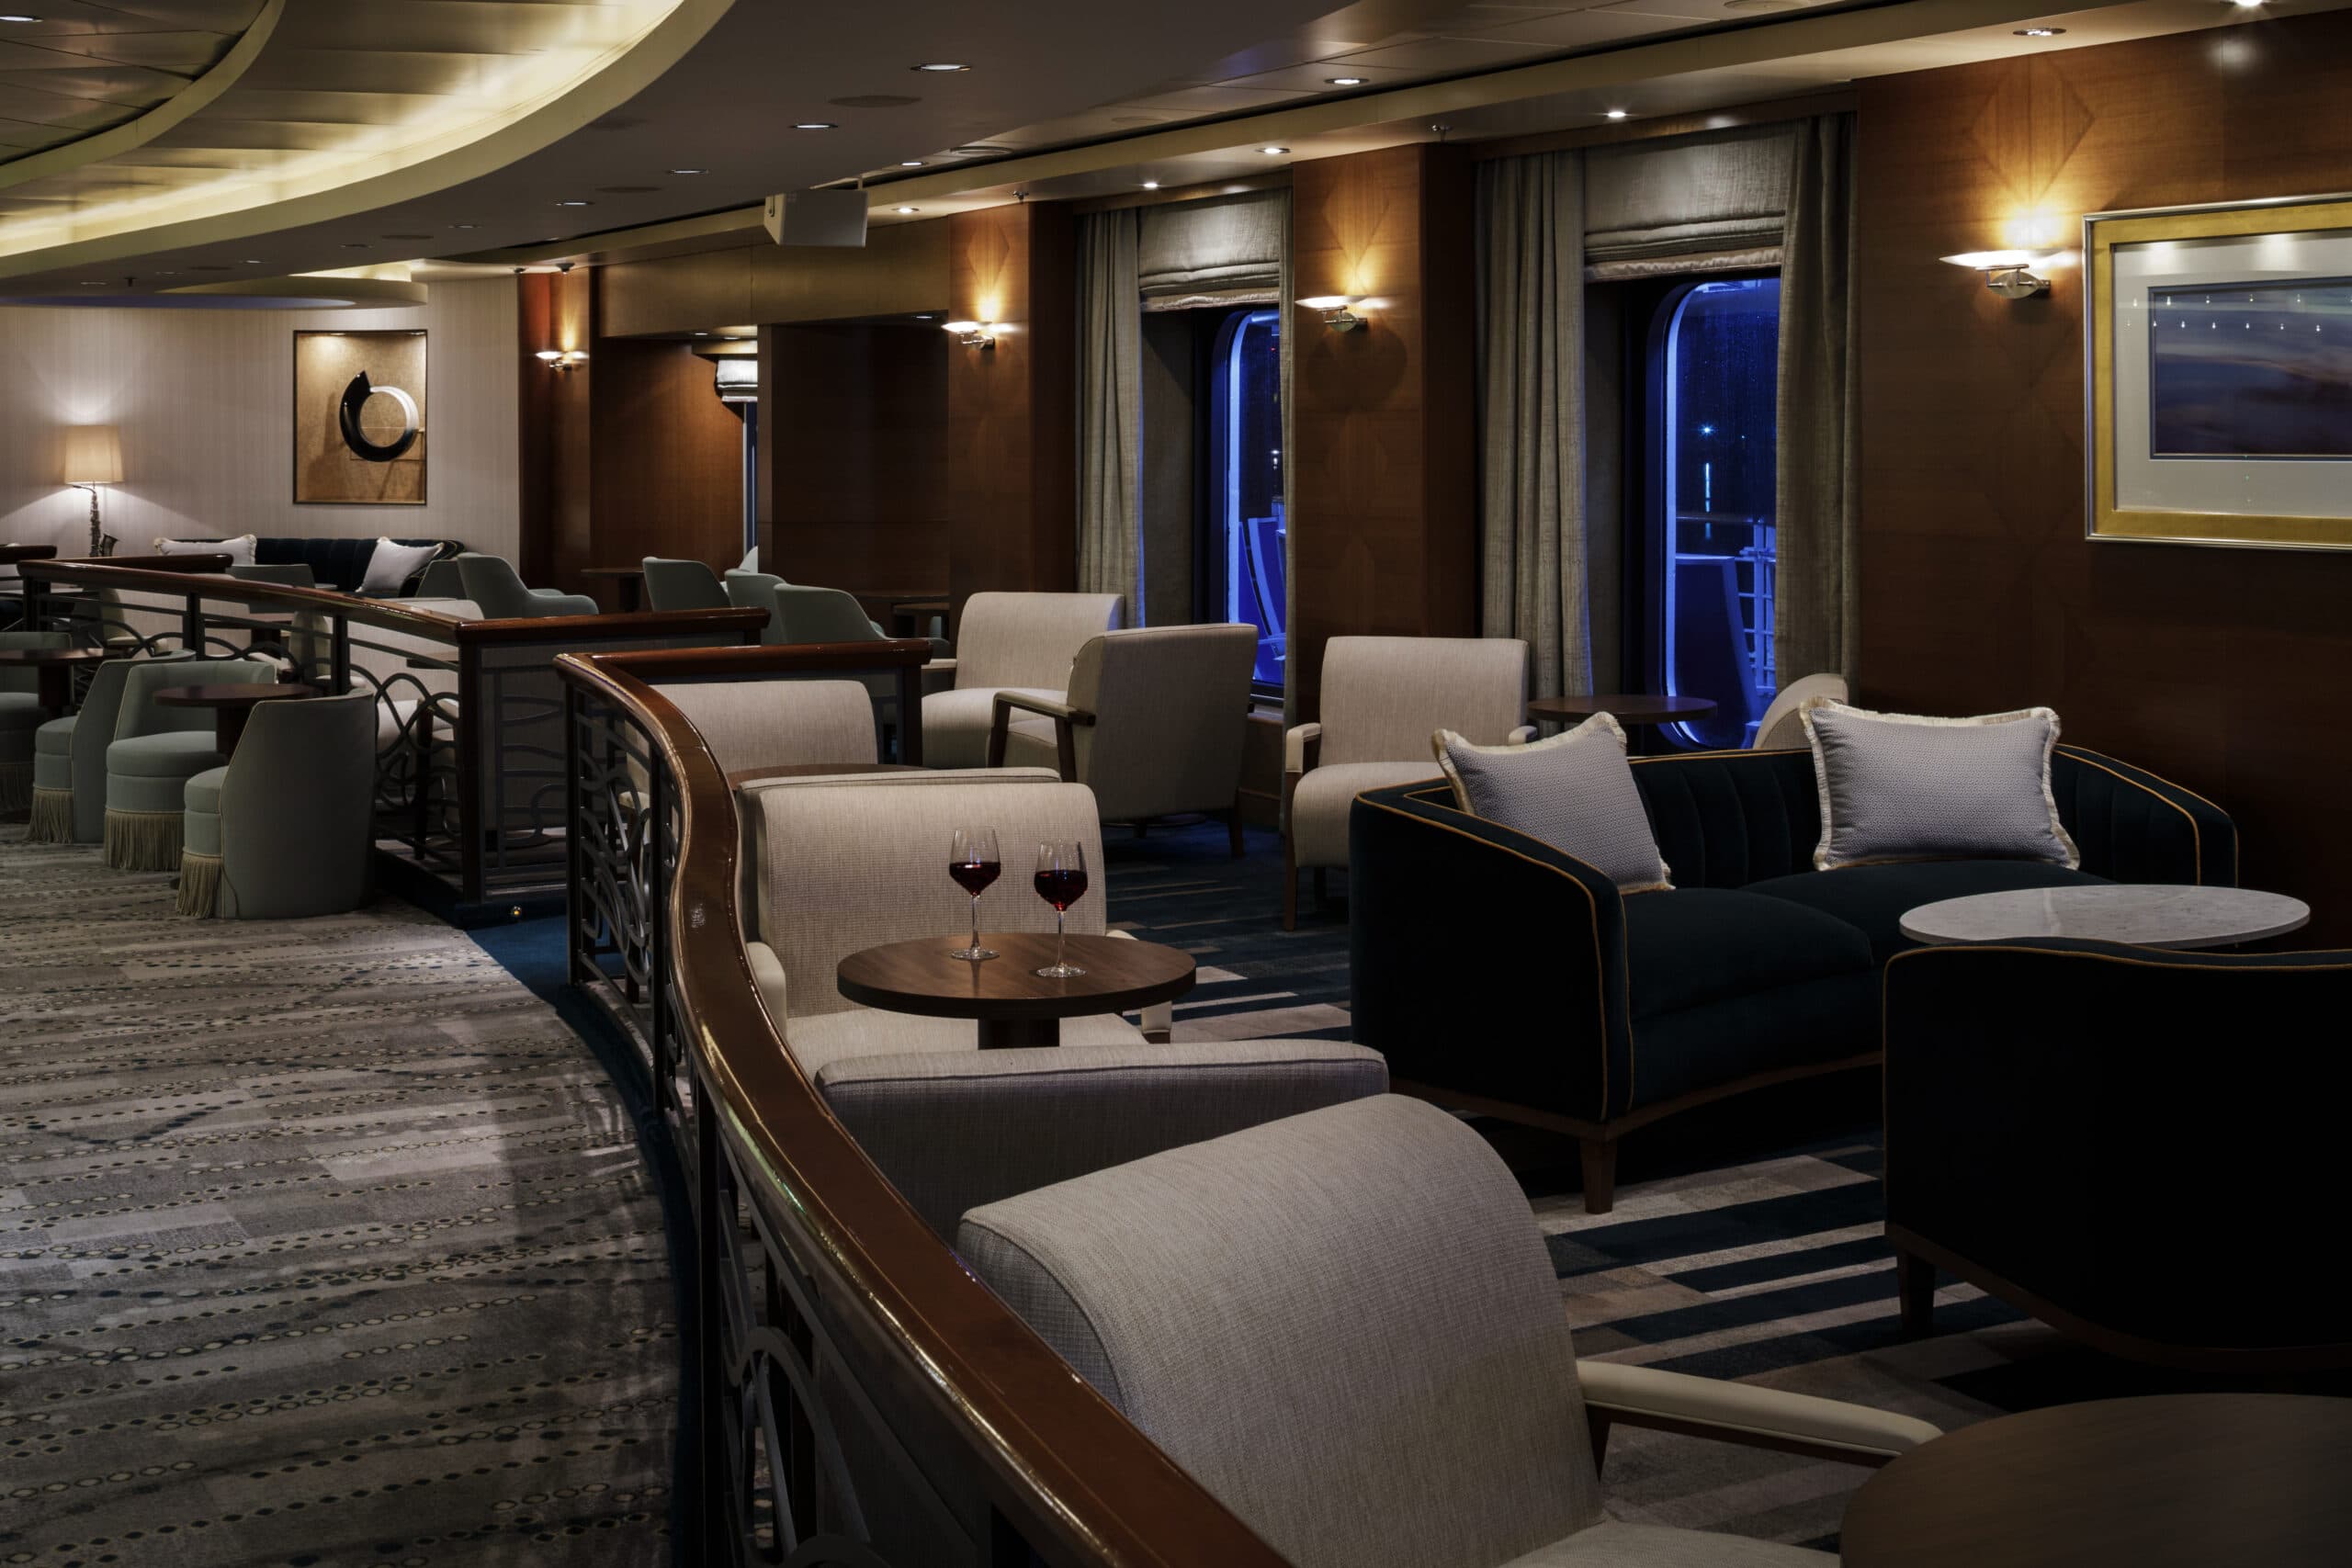 Cruiseschip-Arcadia-P&O Cruises-Piano Bar